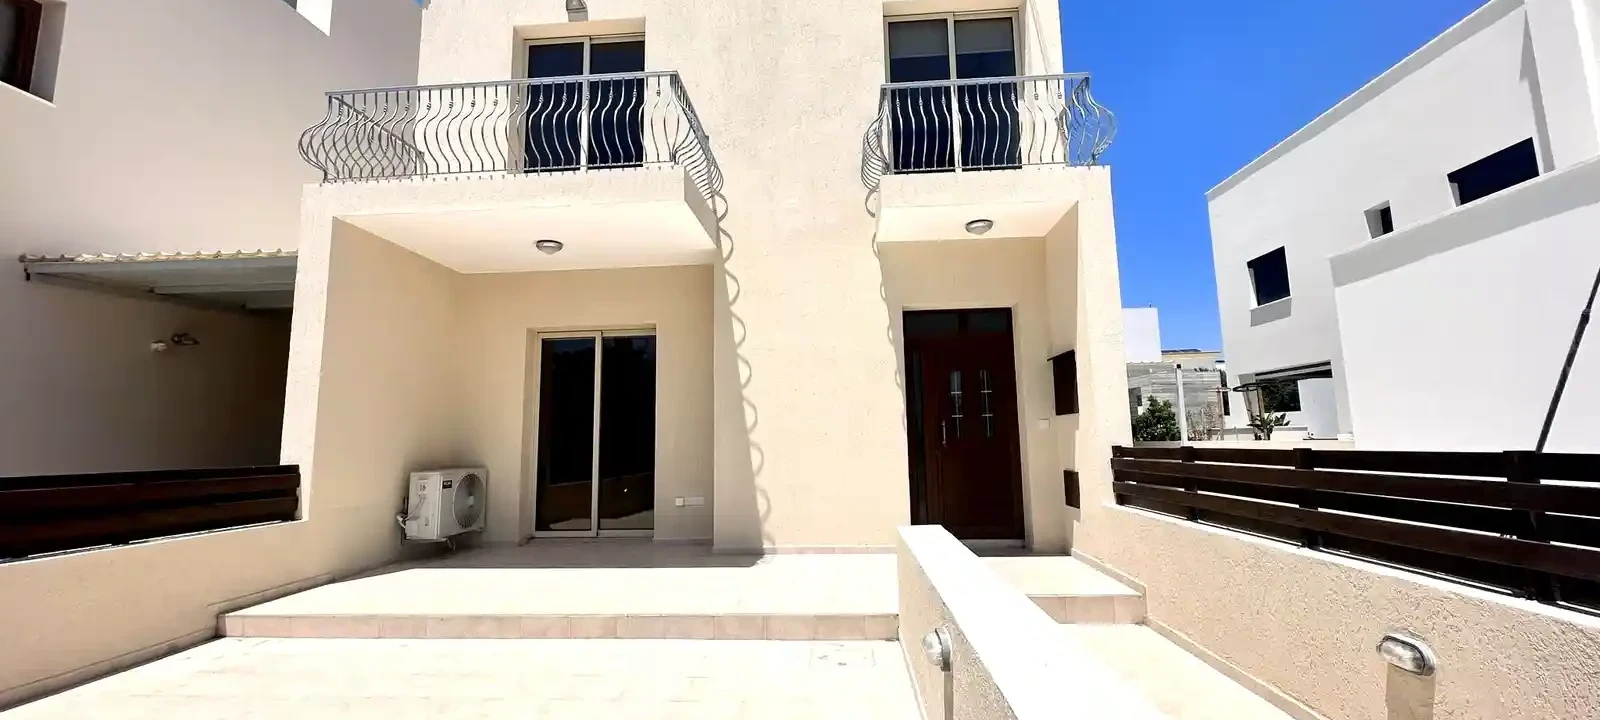 4-bedroom villa to rent €1.800, image 1